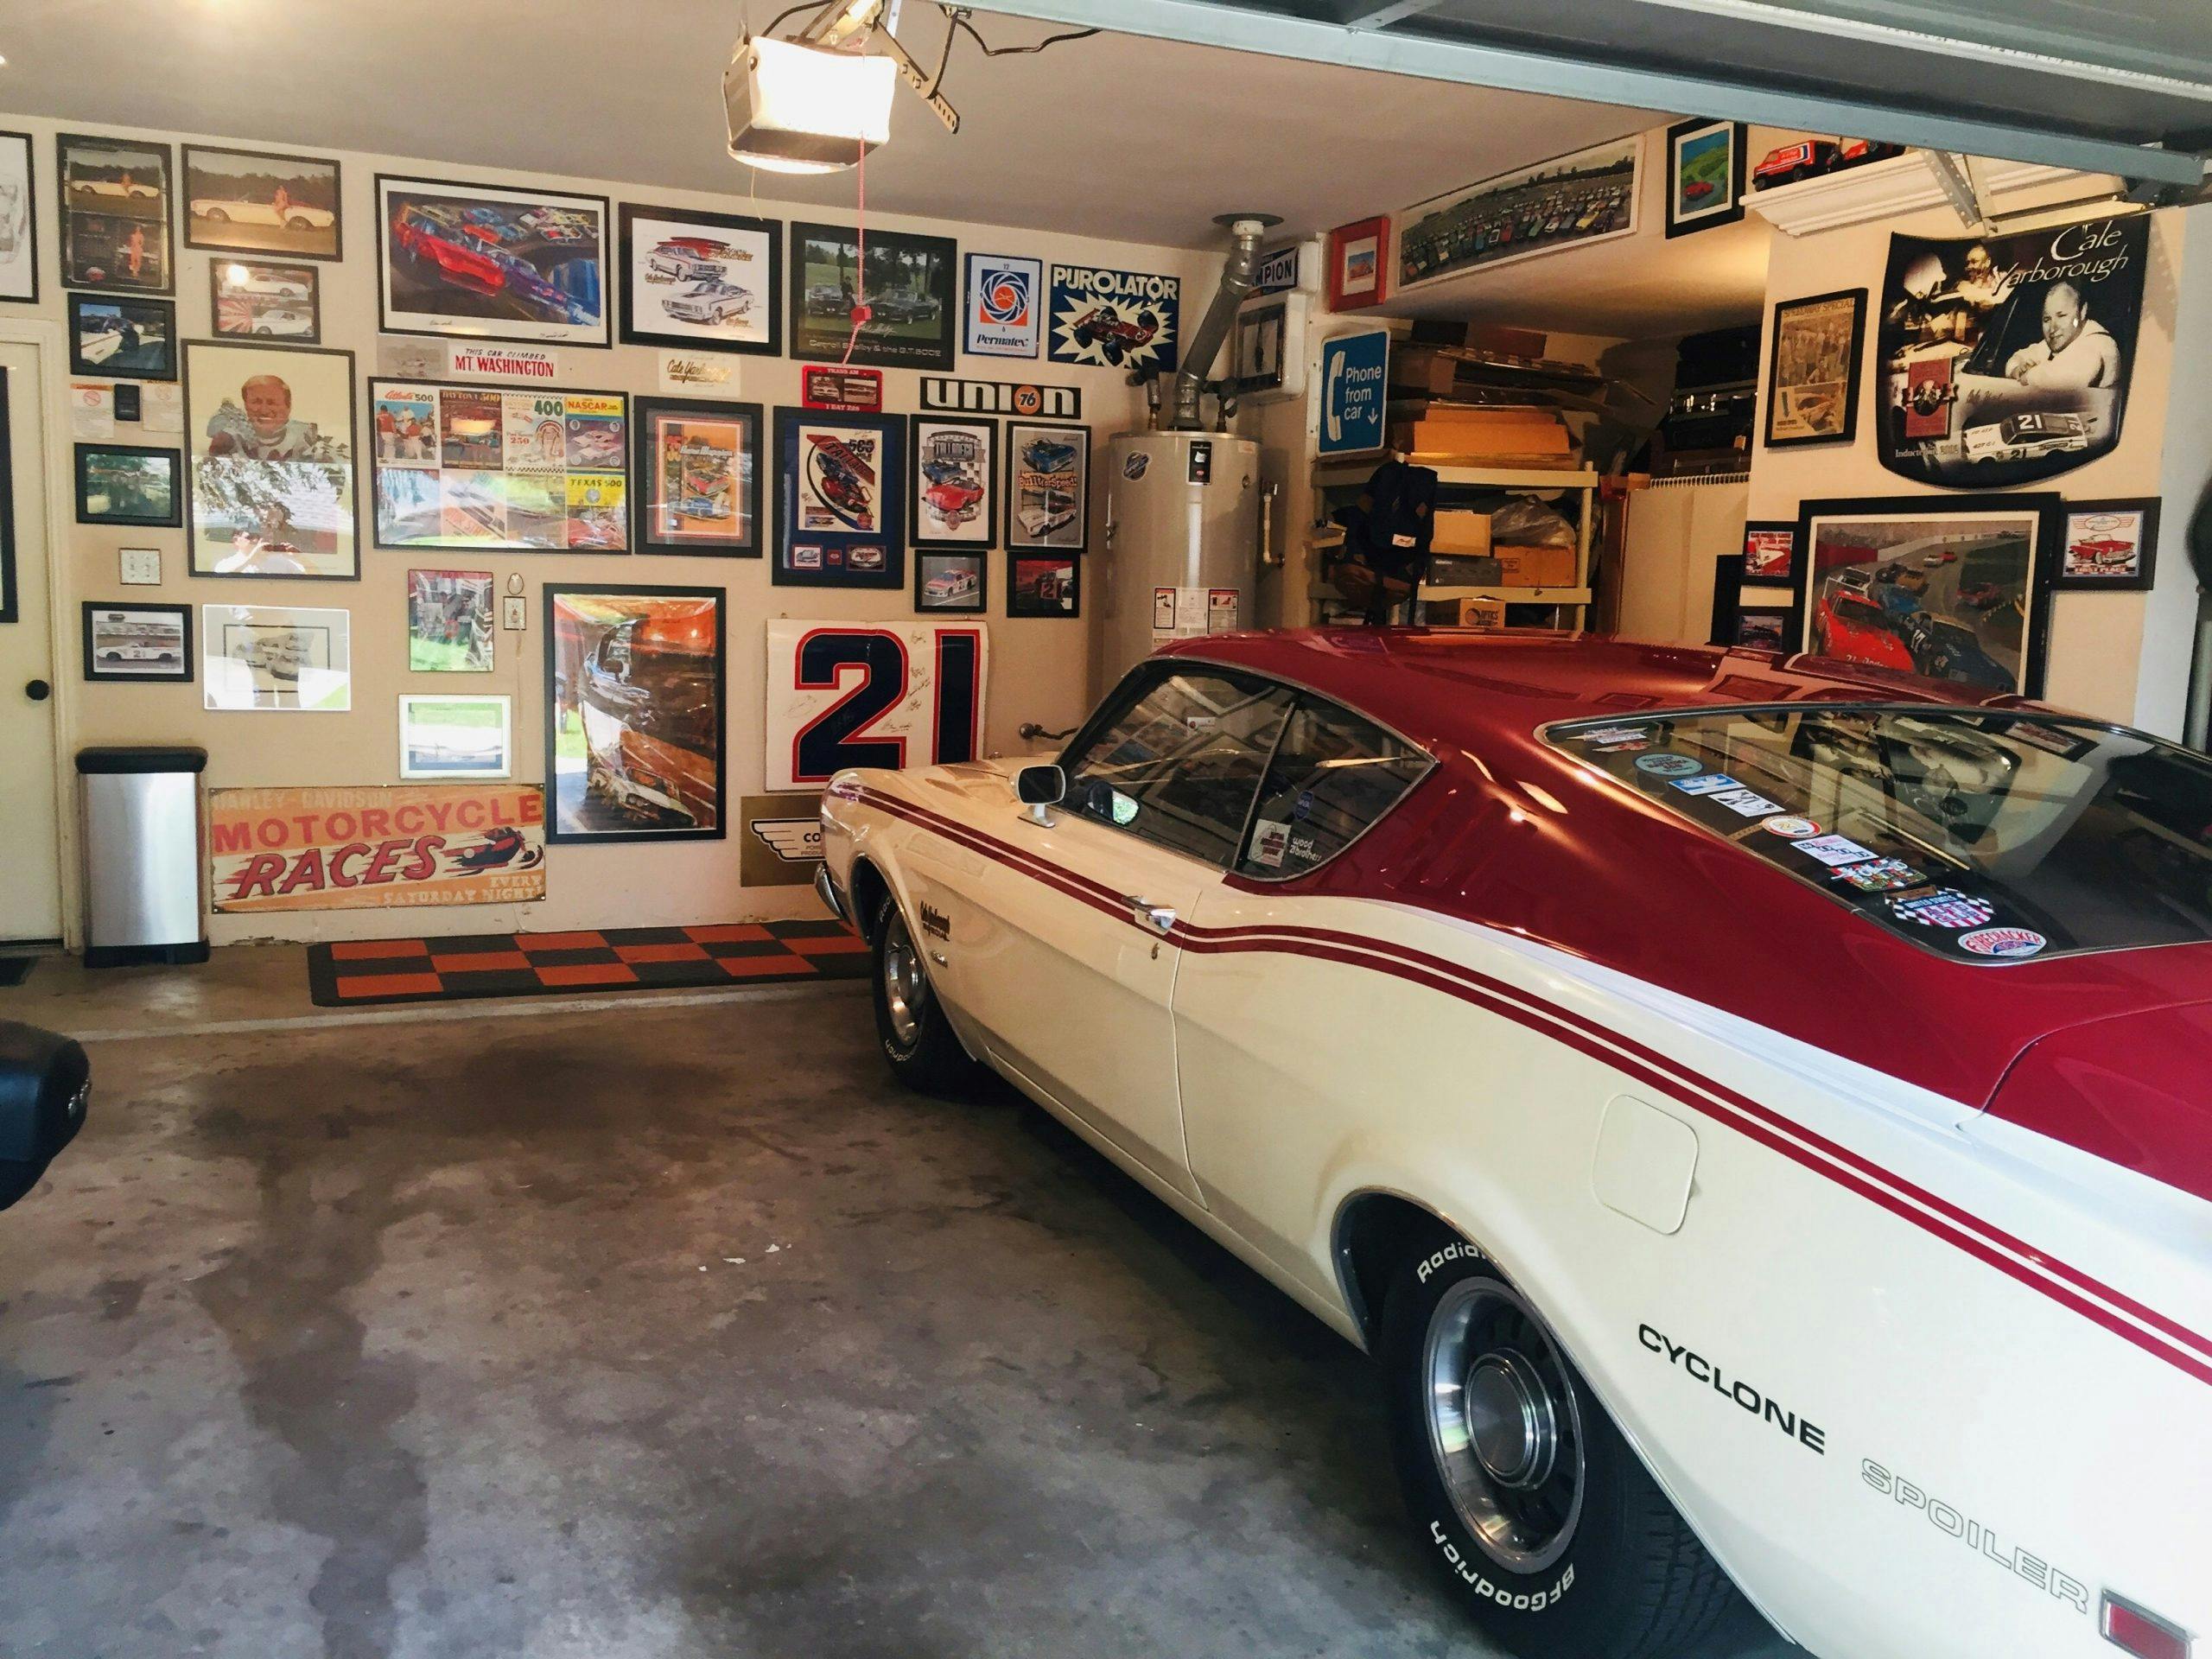 1969 Mercury Cyclone Spoiler garaged